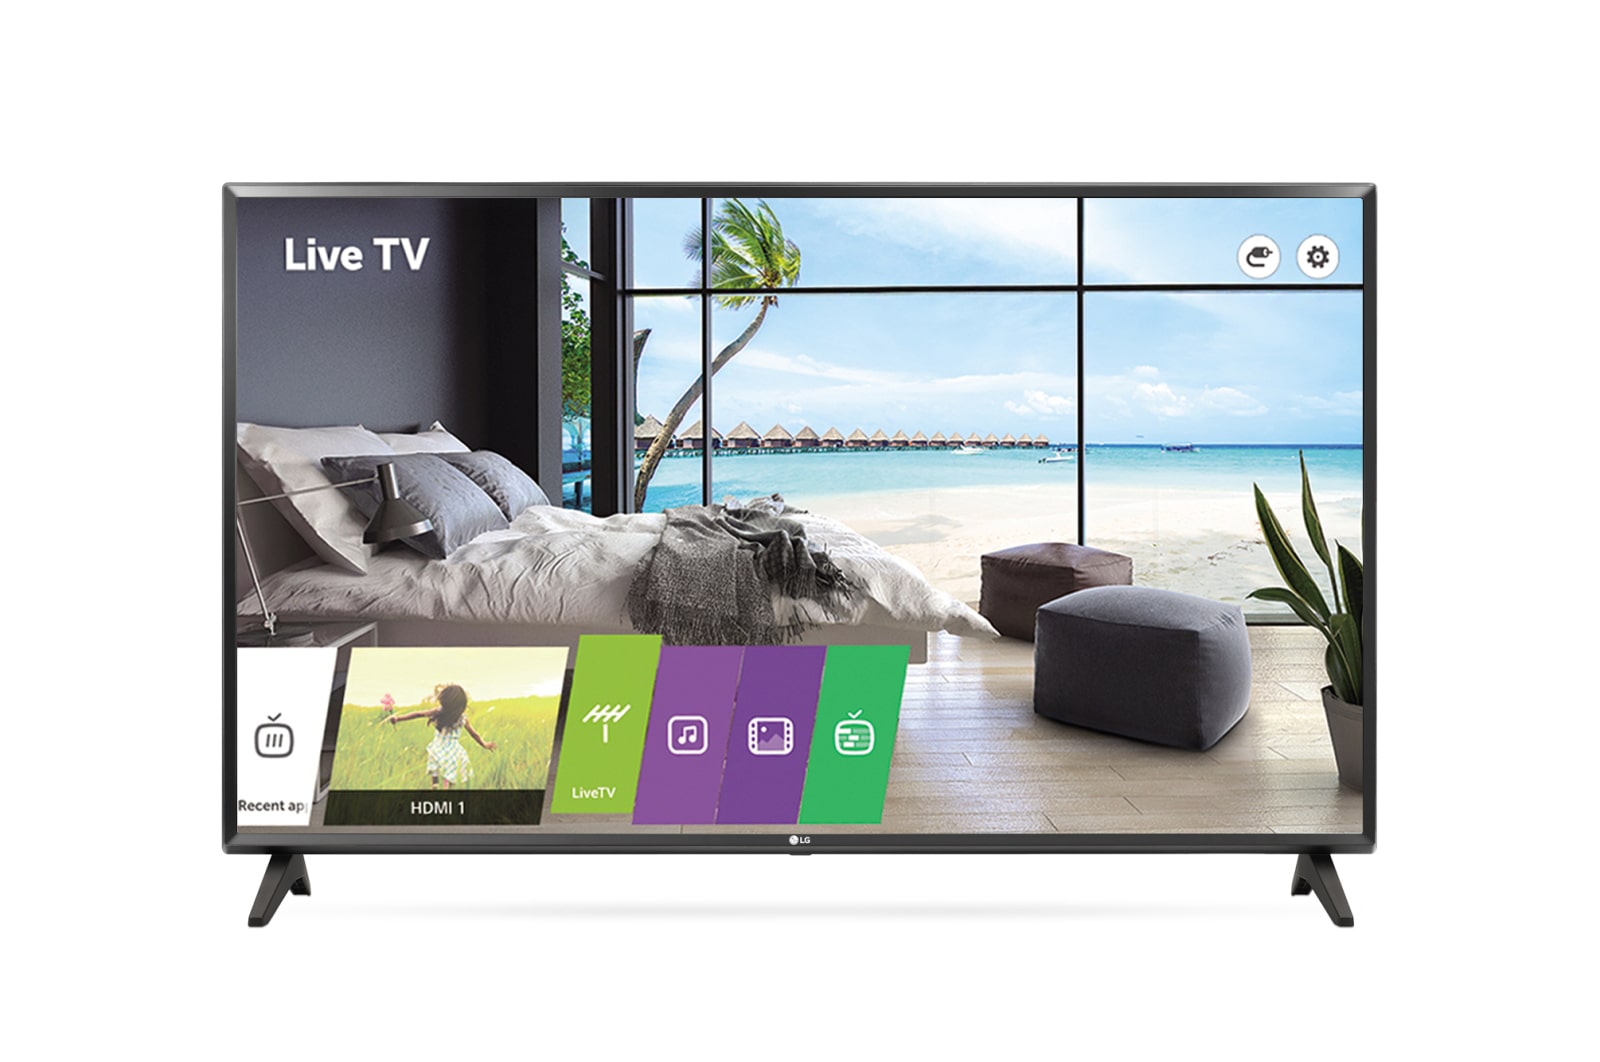 LG LT340C Series - 49" Commercial TV, 49LT340C0CB